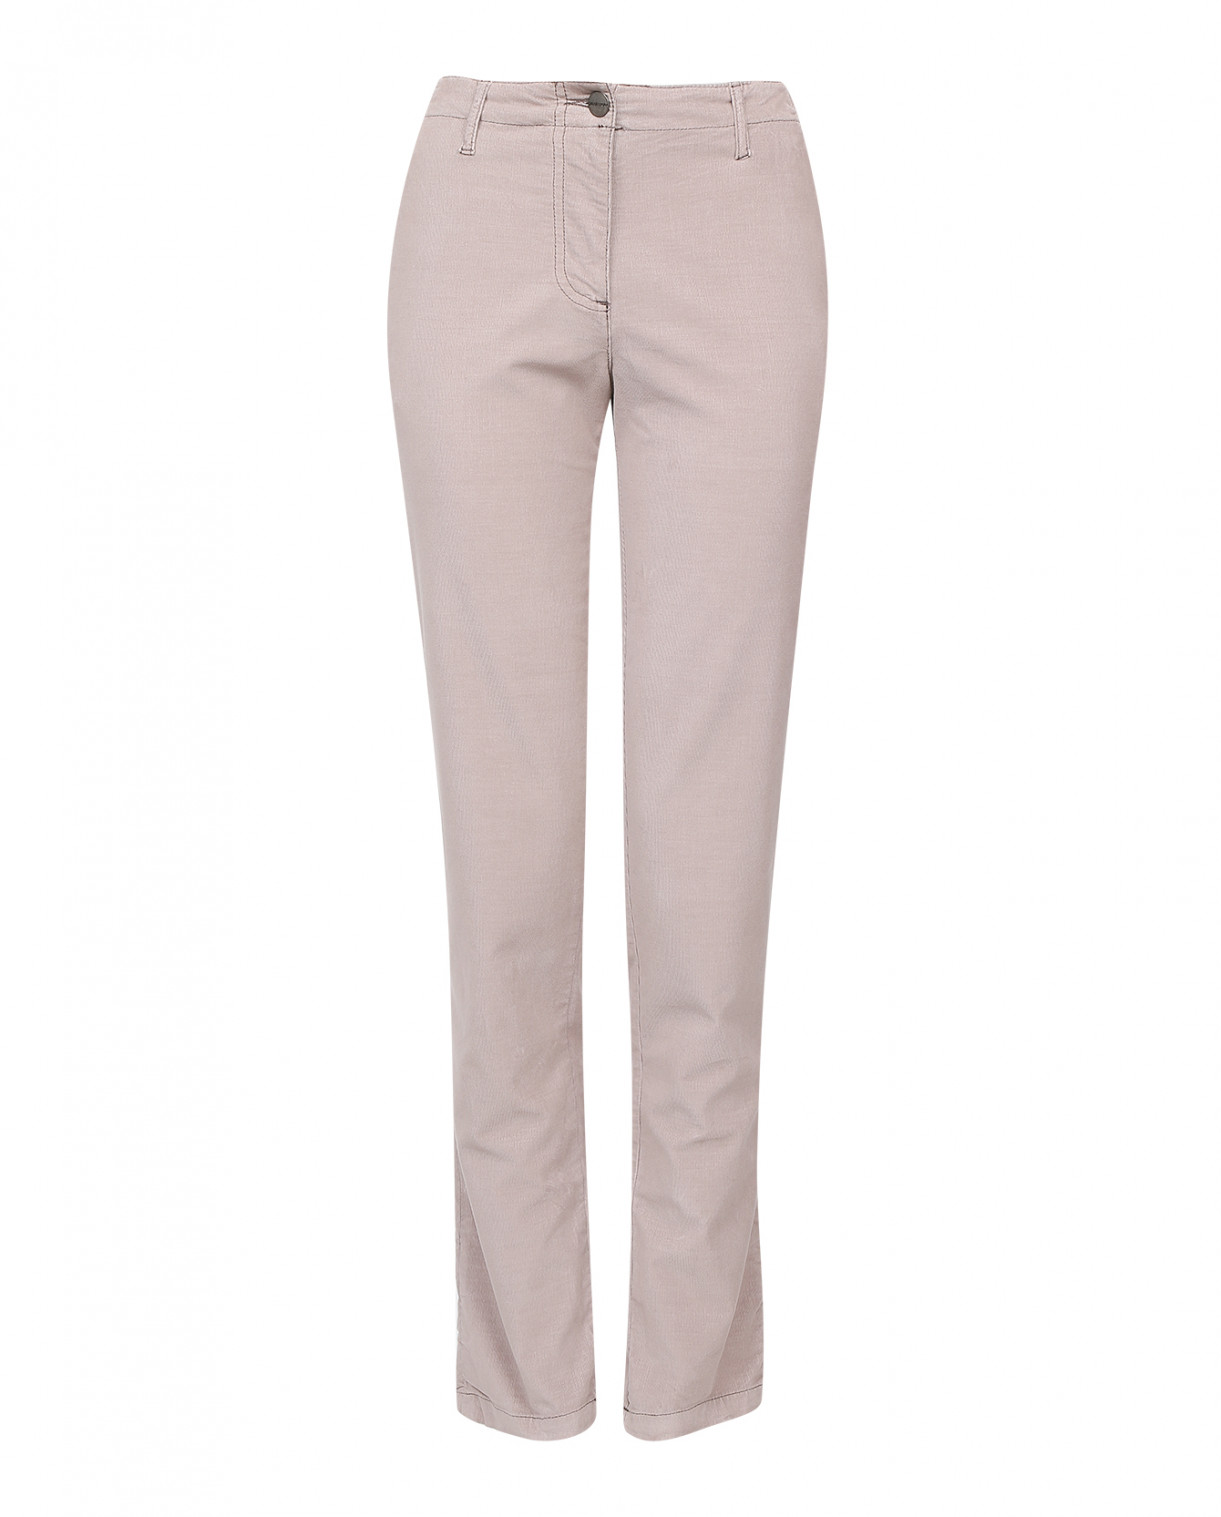 Вельветовые брюки с боковыми карманами Chloé Stora  –  Общий вид  – Цвет:  Бежевый